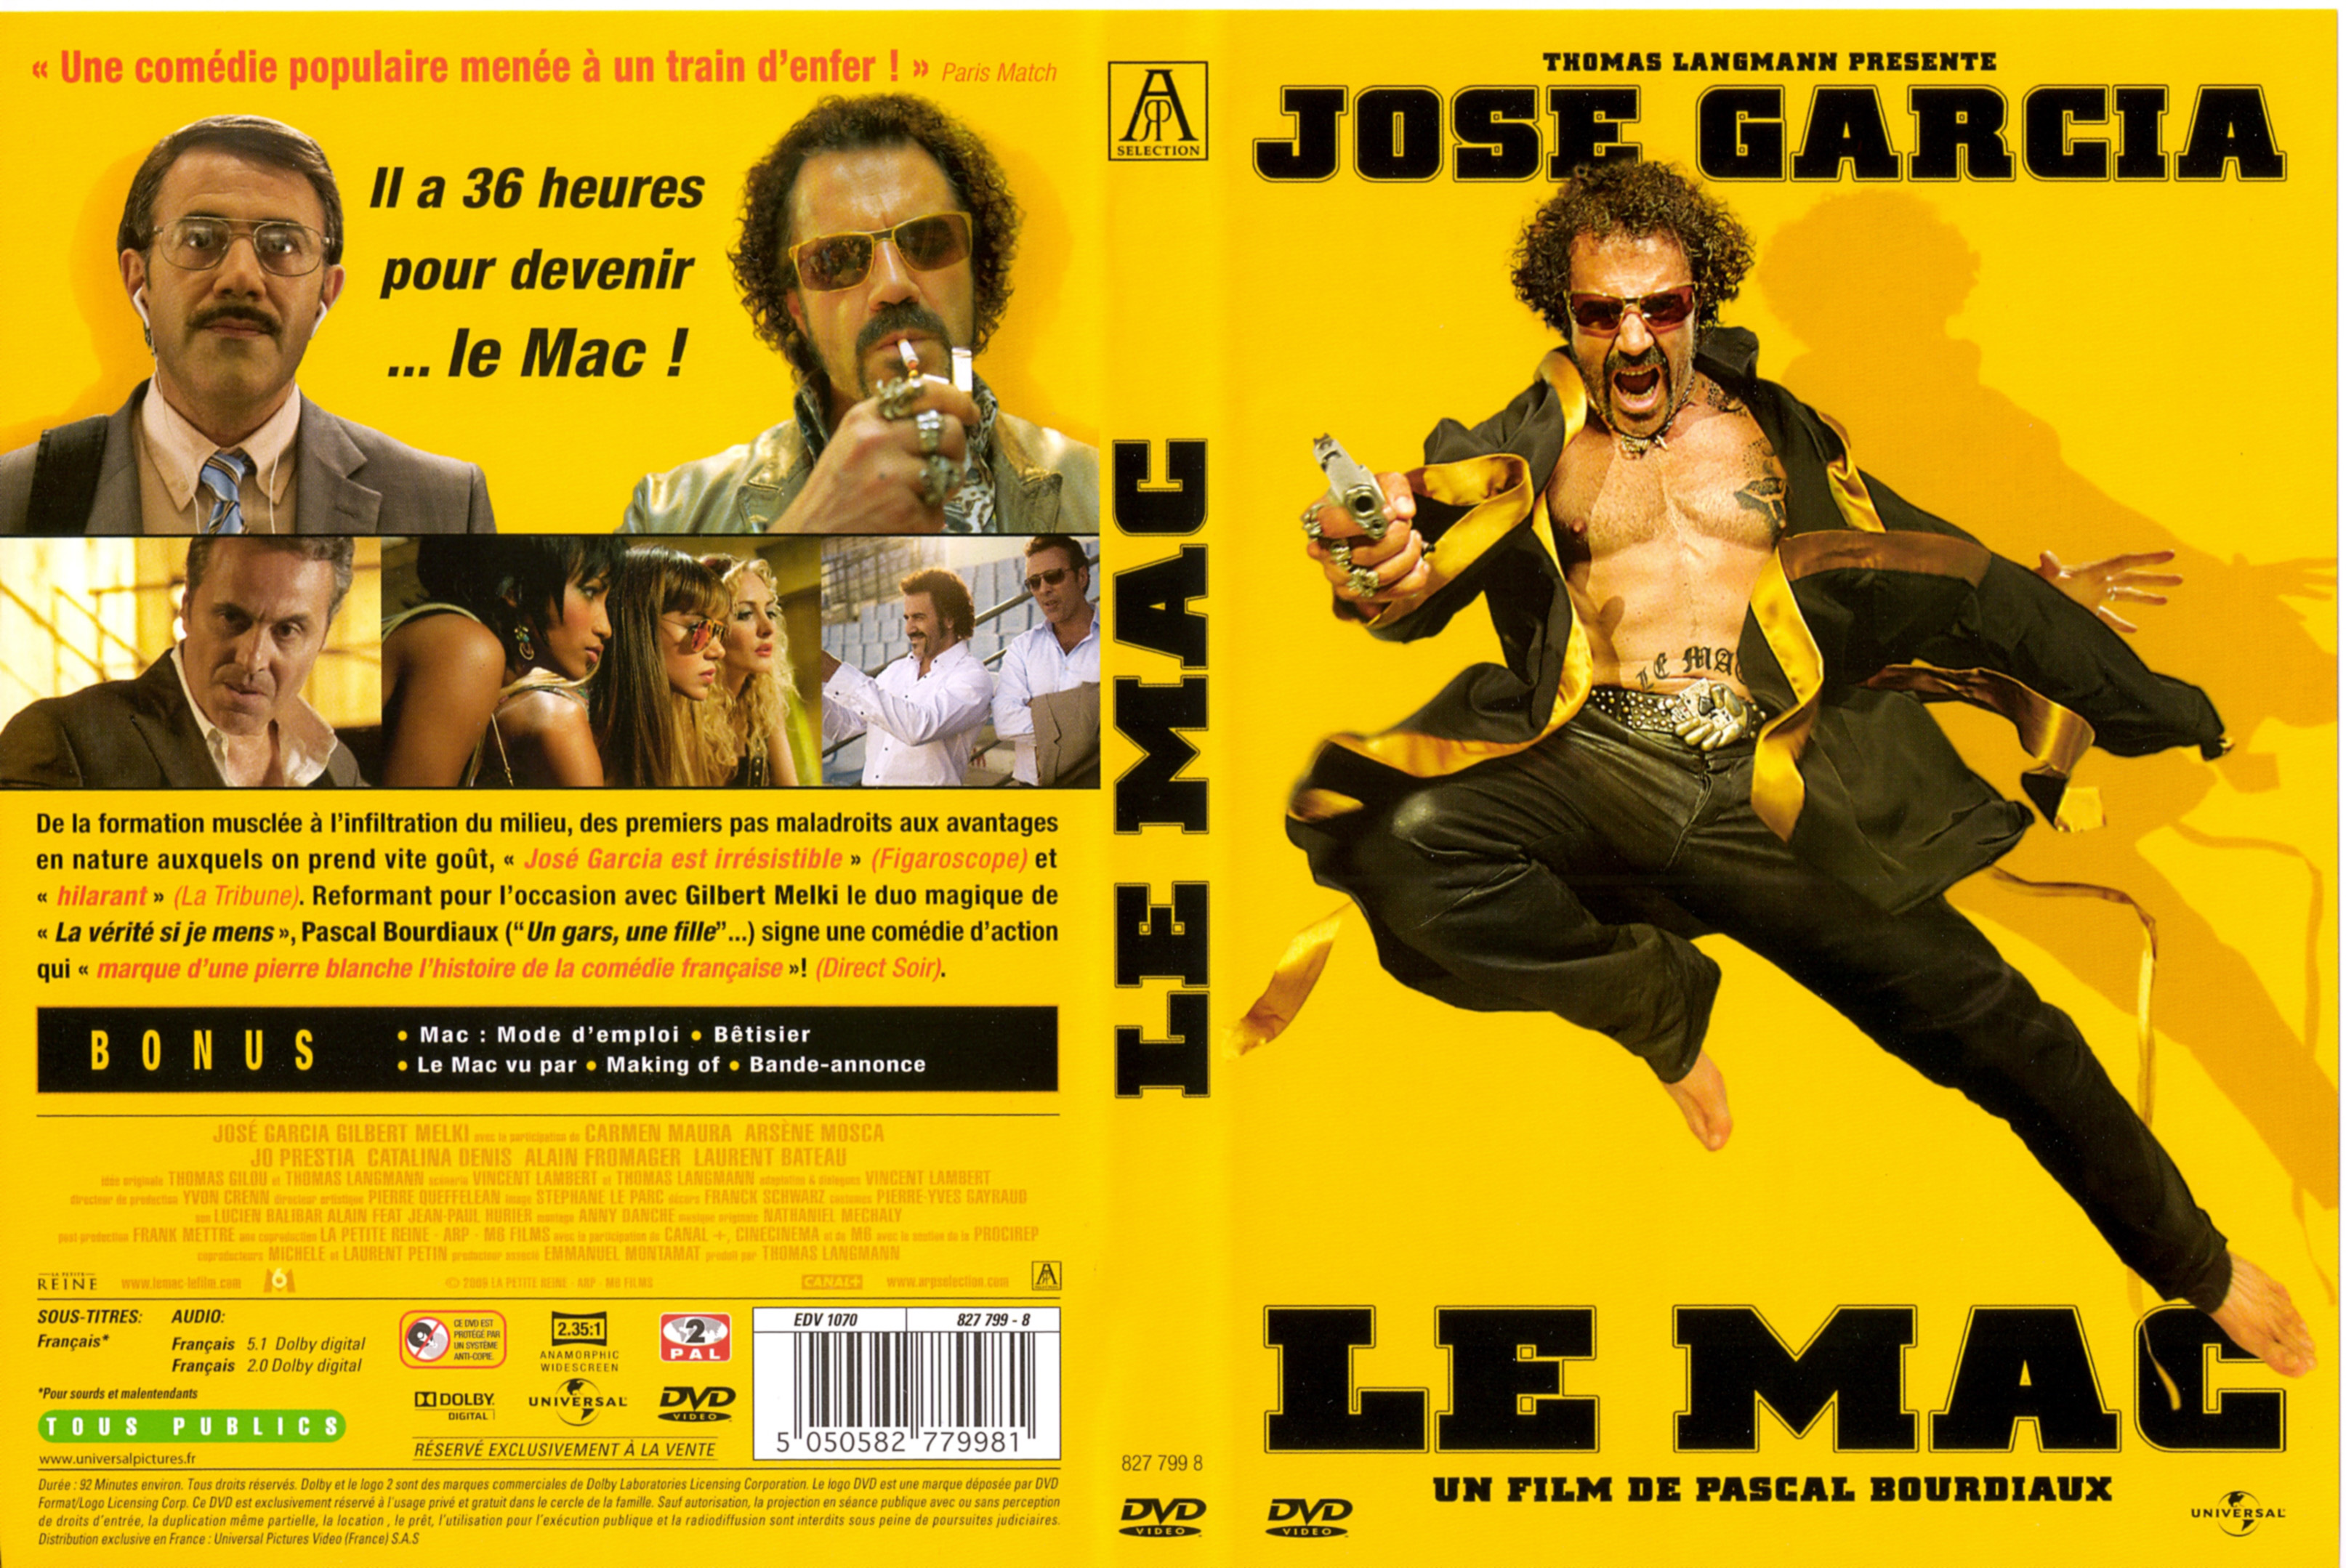 Jaquette DVD Le mac